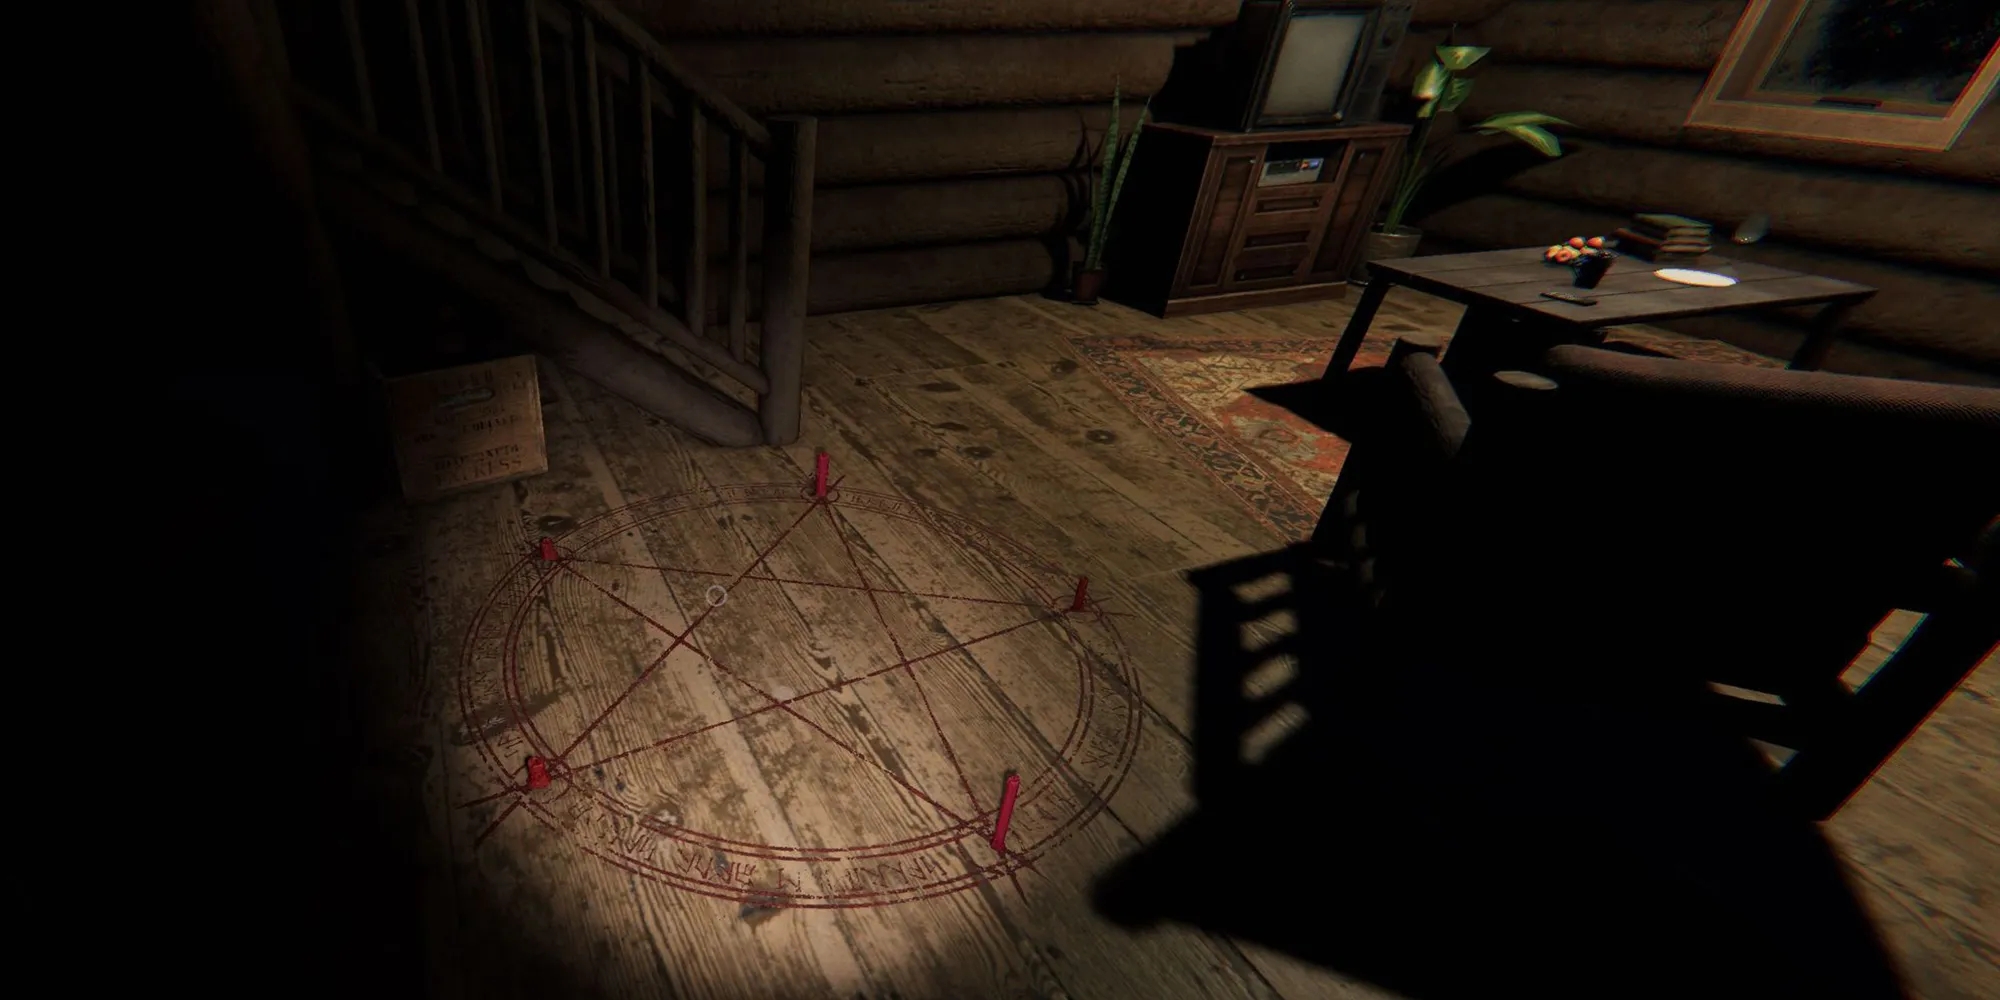 图片展示了枫树小屋露营地木屋内地面上的一个红色召唤圈。